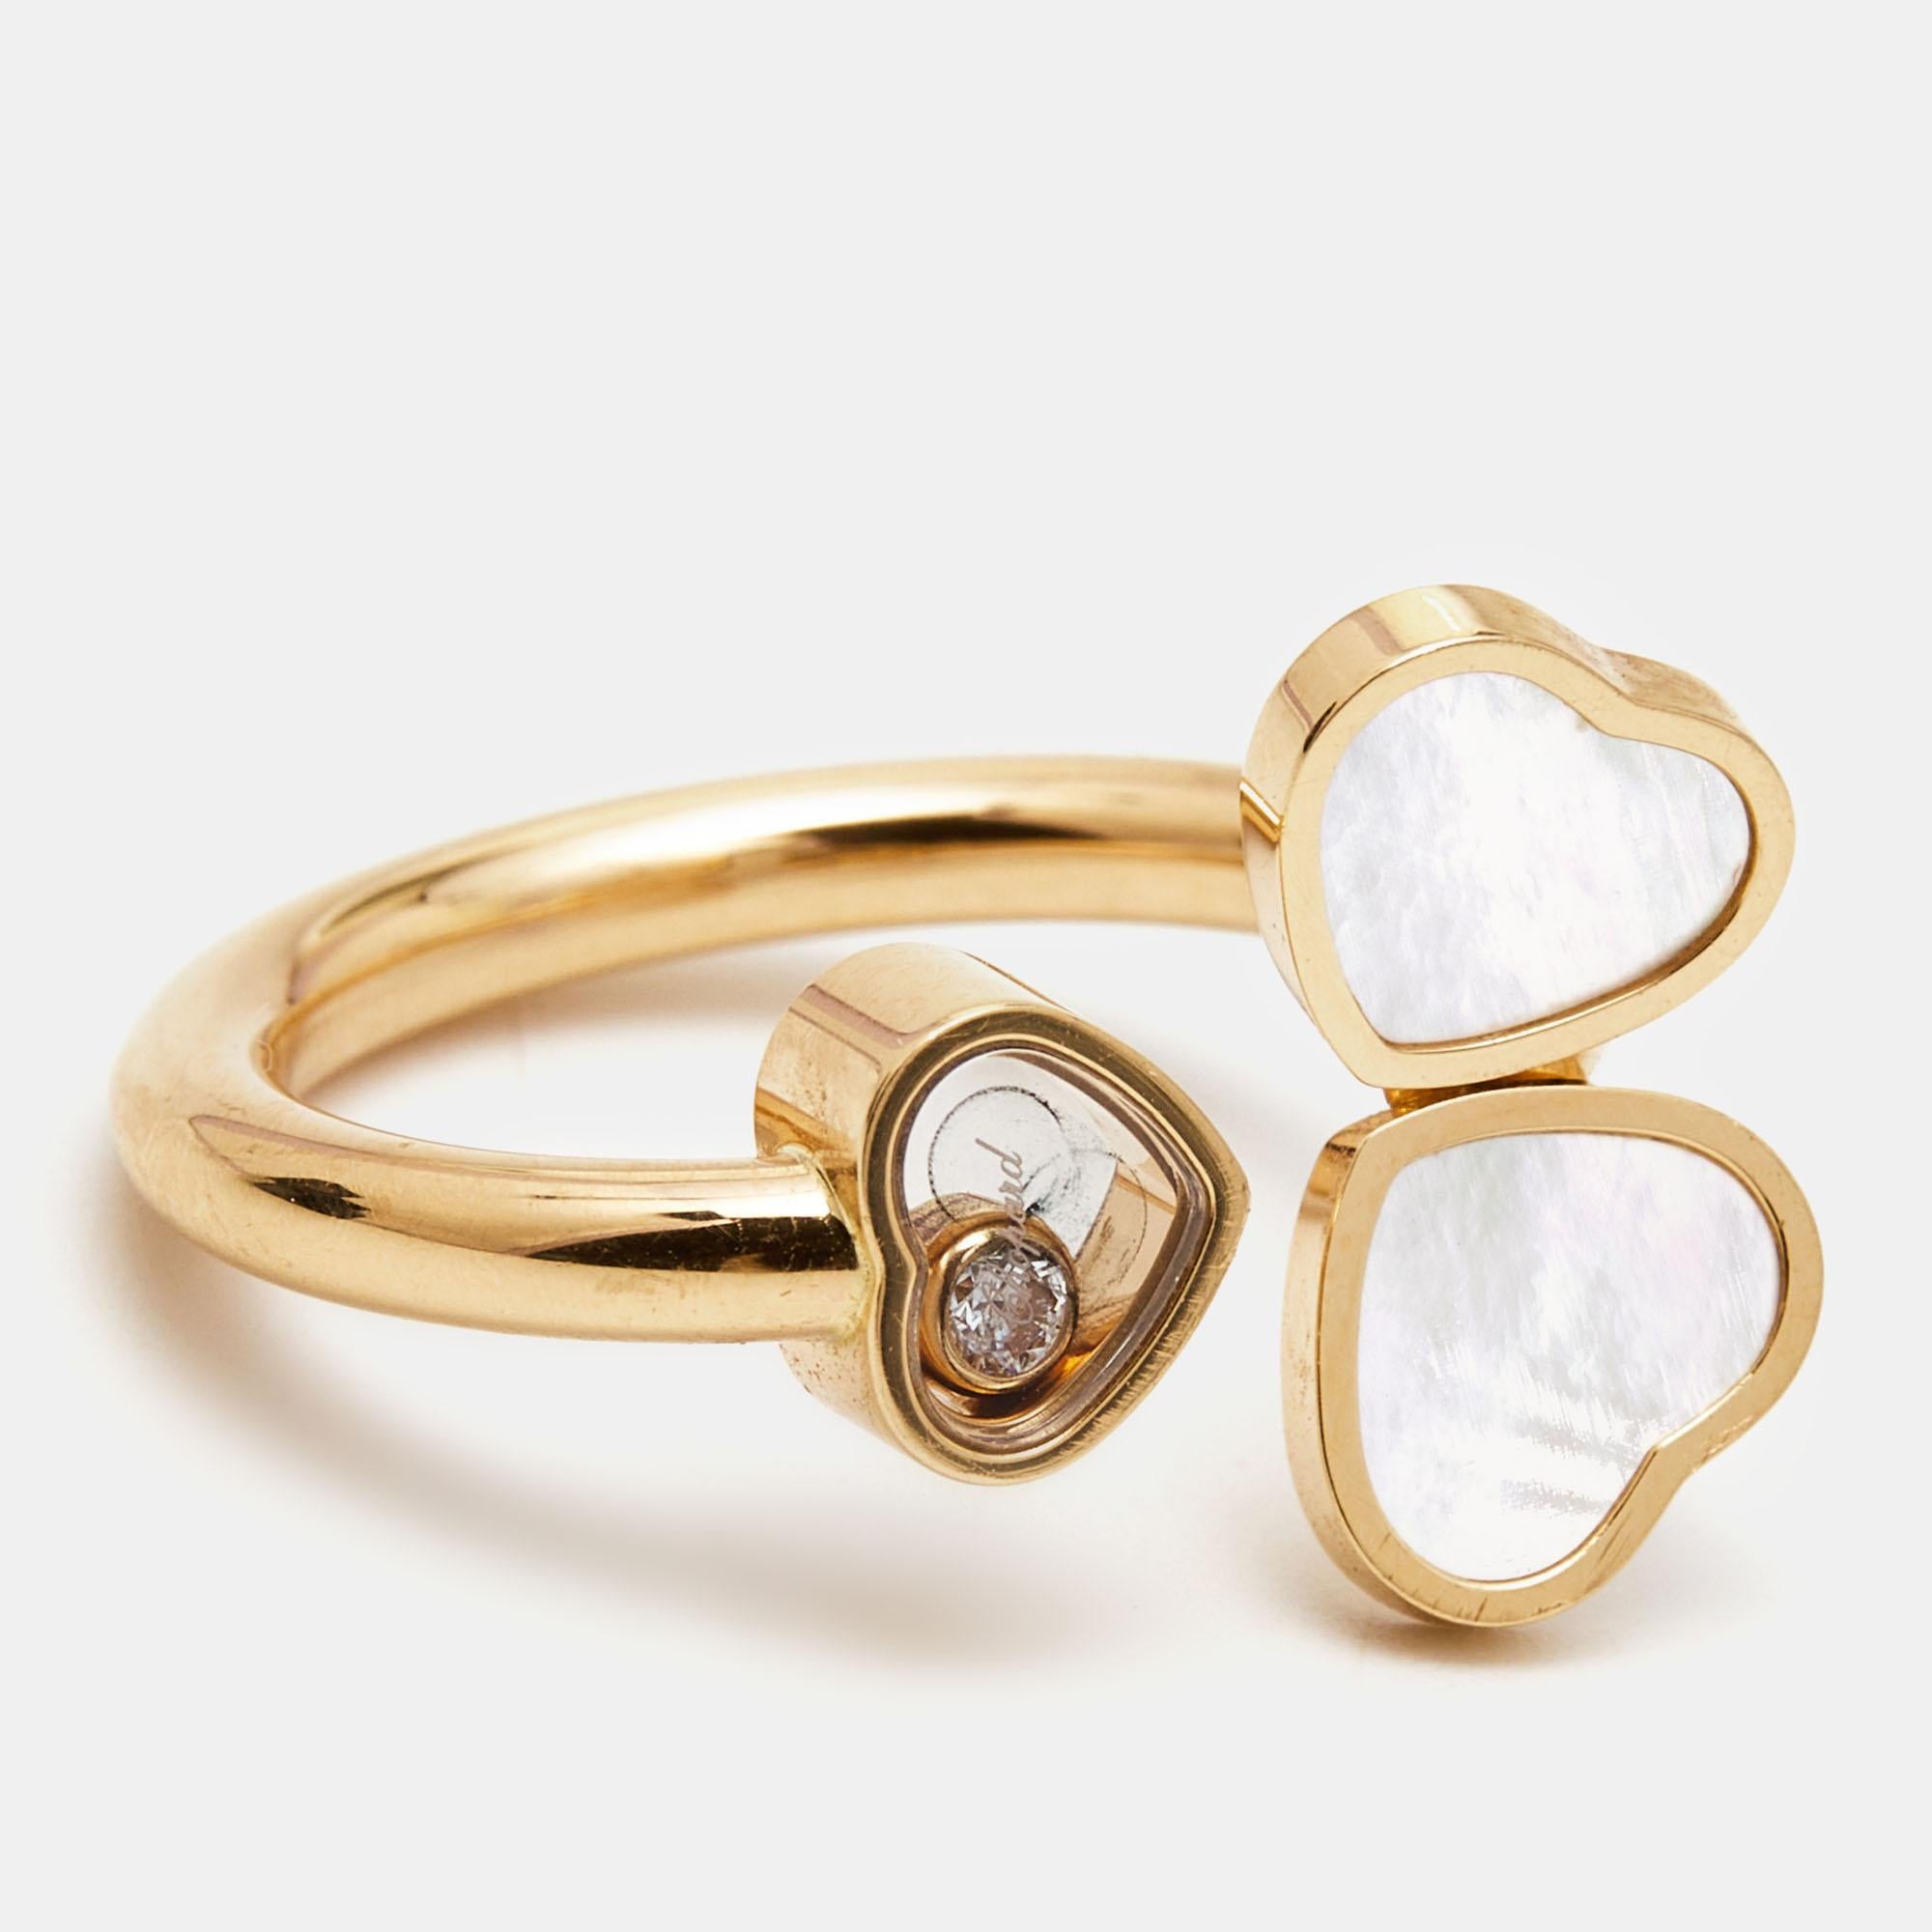 Der Chopard Happy Heart Wings Ring ist ein himmlisches Wunderwerk. Dieser Ring aus 18 Karat Roségold ist mit zarten, schwebenden Diamanten verziert und verfügt über ein faszinierendes Perlmutt in der Mitte. Er strahlt Anmut und Charme aus und ist